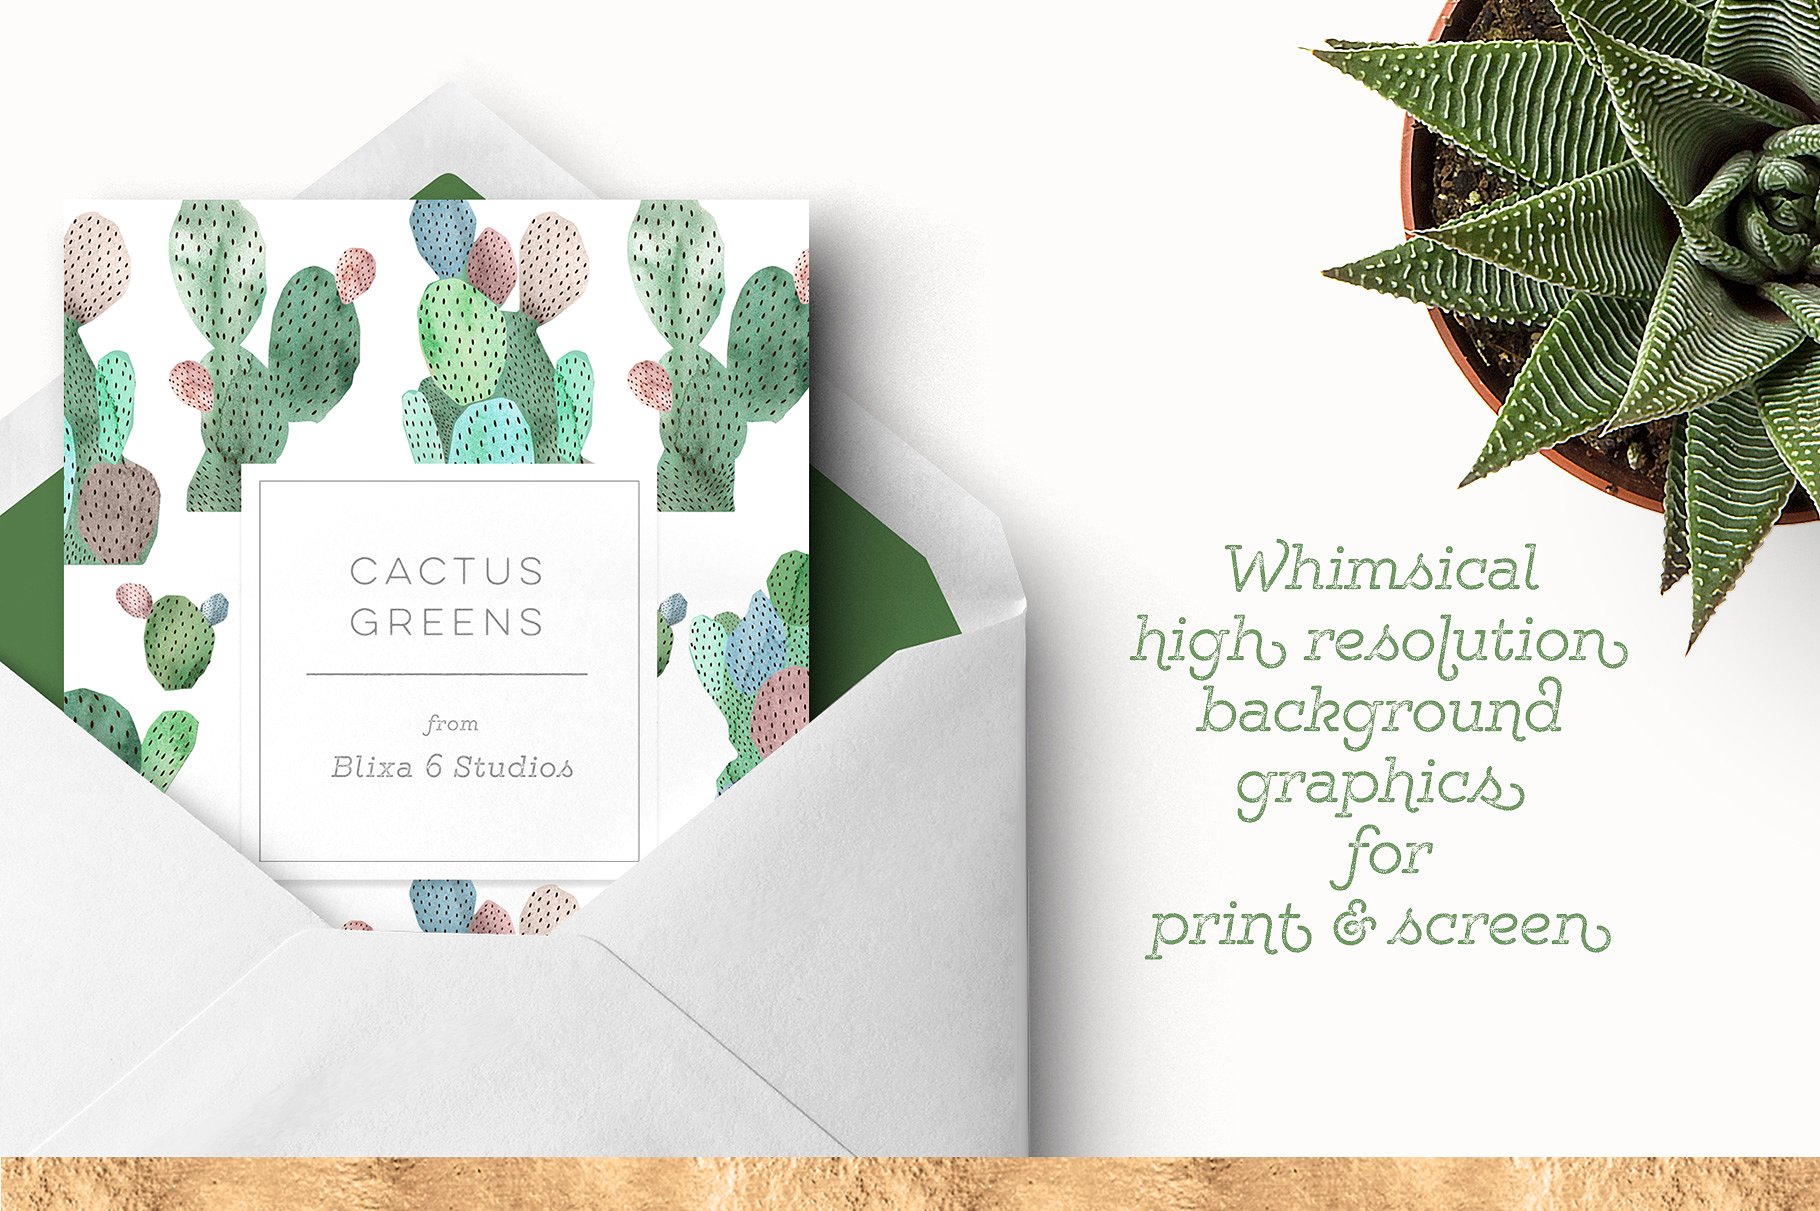 绿色水彩图案纹理合集 Cactus Greens Watercolor Graphics插图(1)